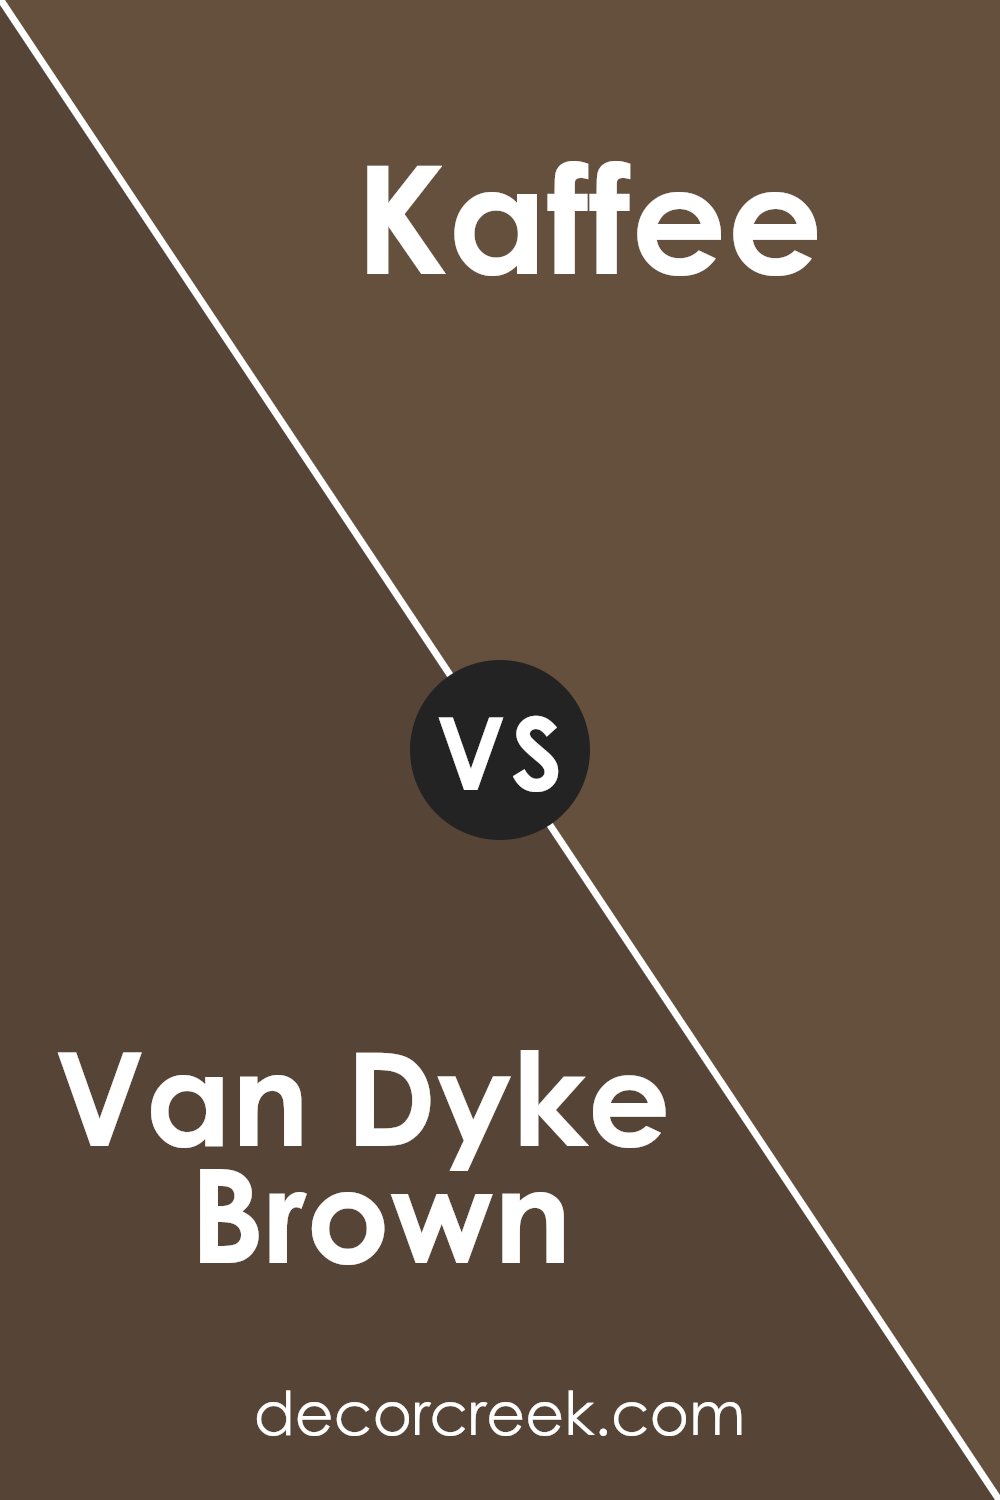 van_dyke_brown_sw_7041_vs_kaffee_sw_6104